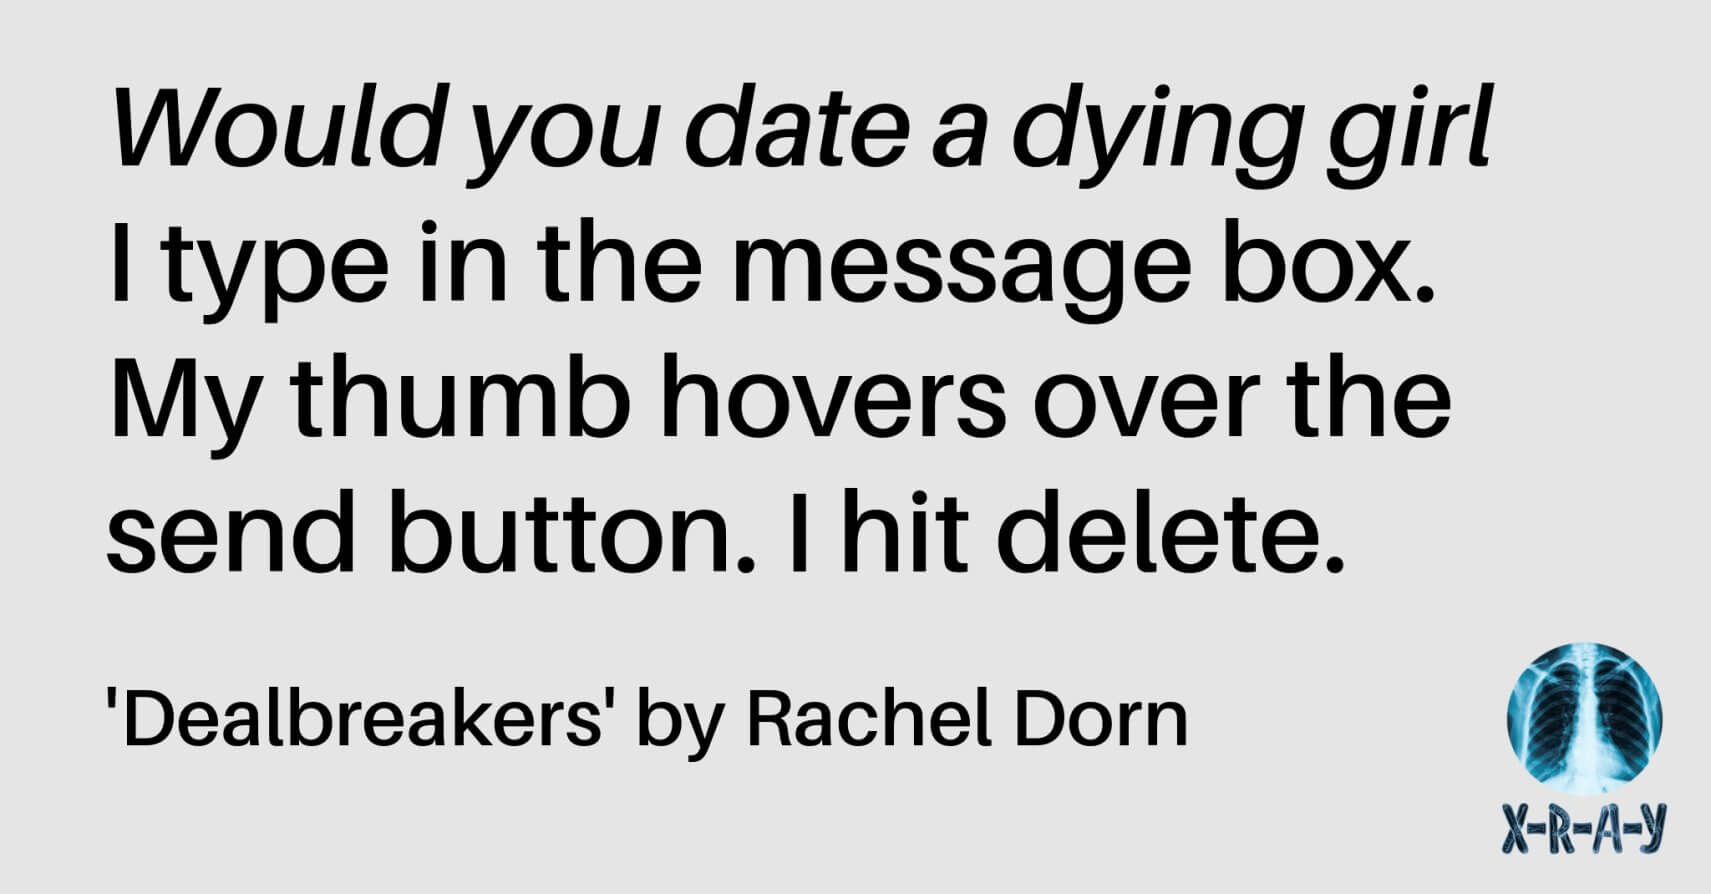 DEALBREAKERS by Rachel Dorn